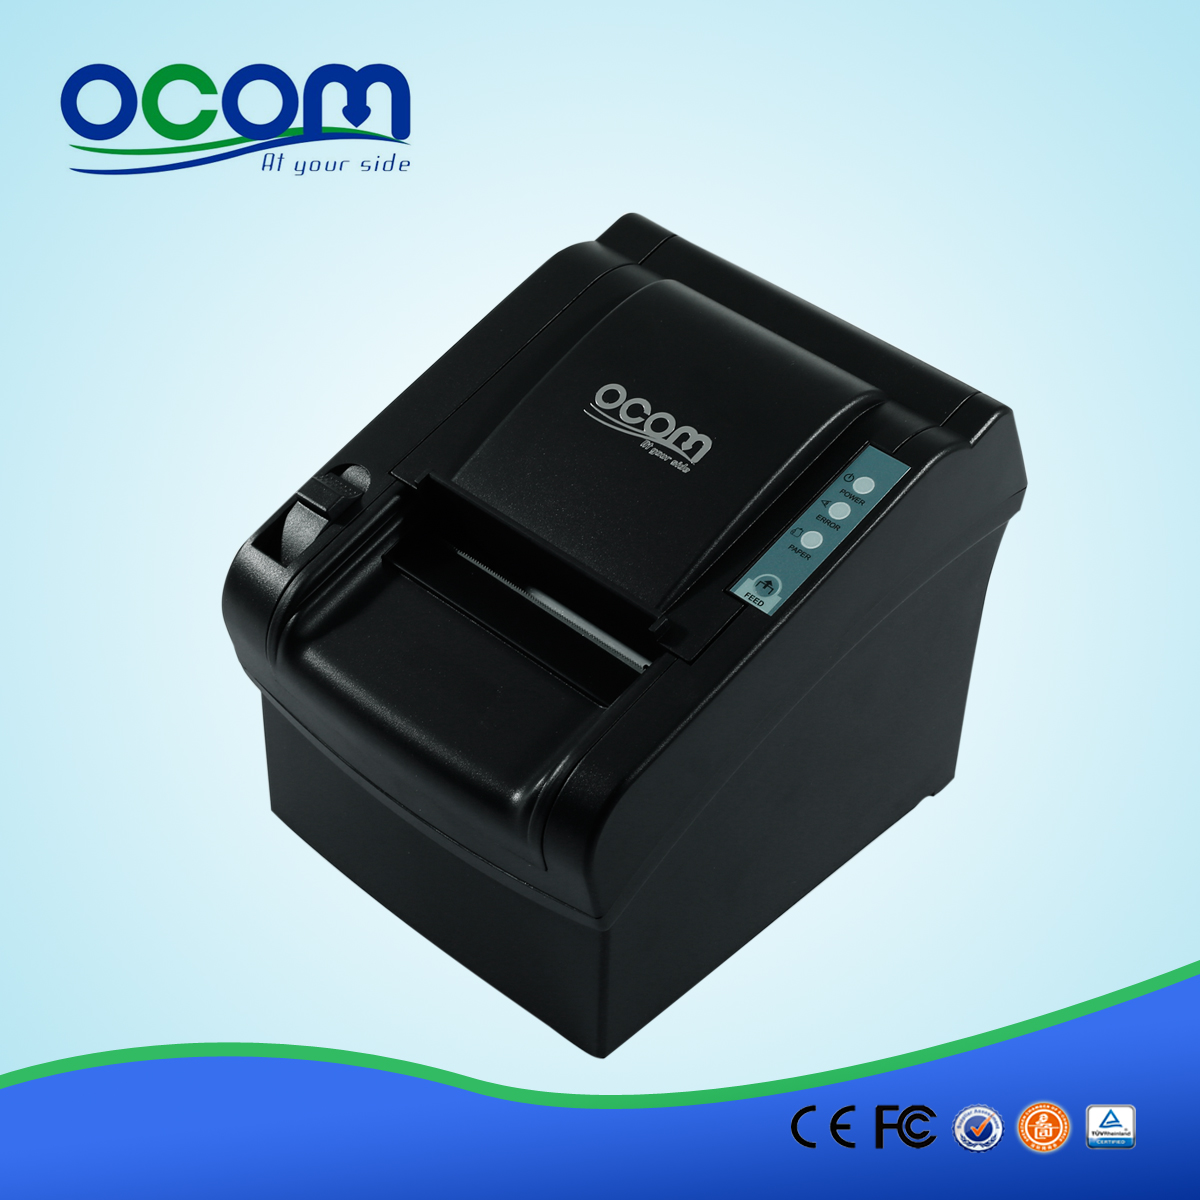 OCPP-802: продажа на пос чековый принтер тепловой, прямая термопечать цена принтера